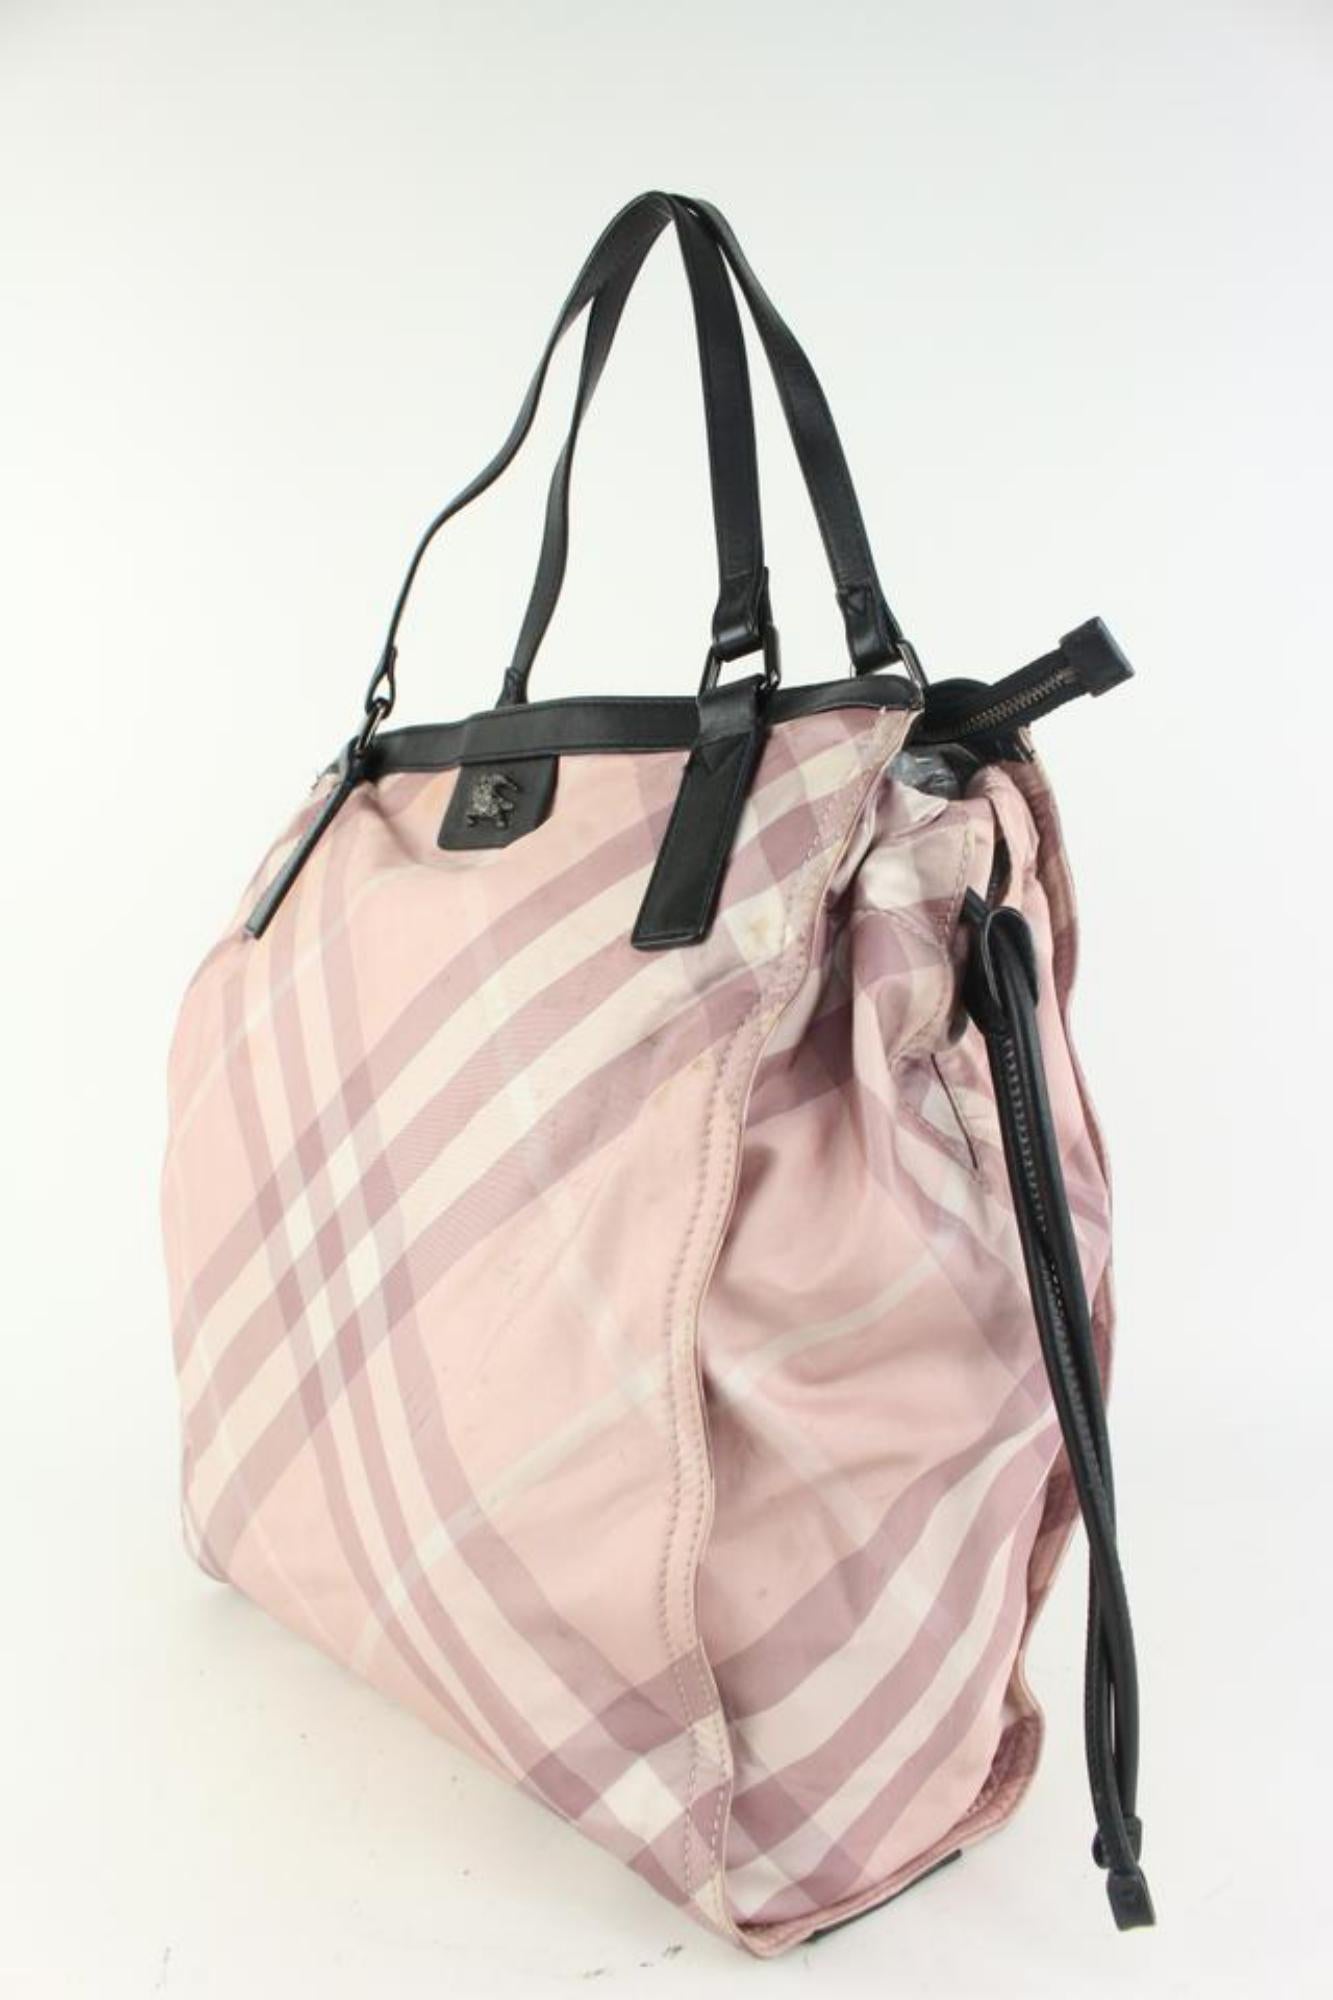 Burberry Pink Nova Check Shopper Tote Bag 928bur79 For Sale 7